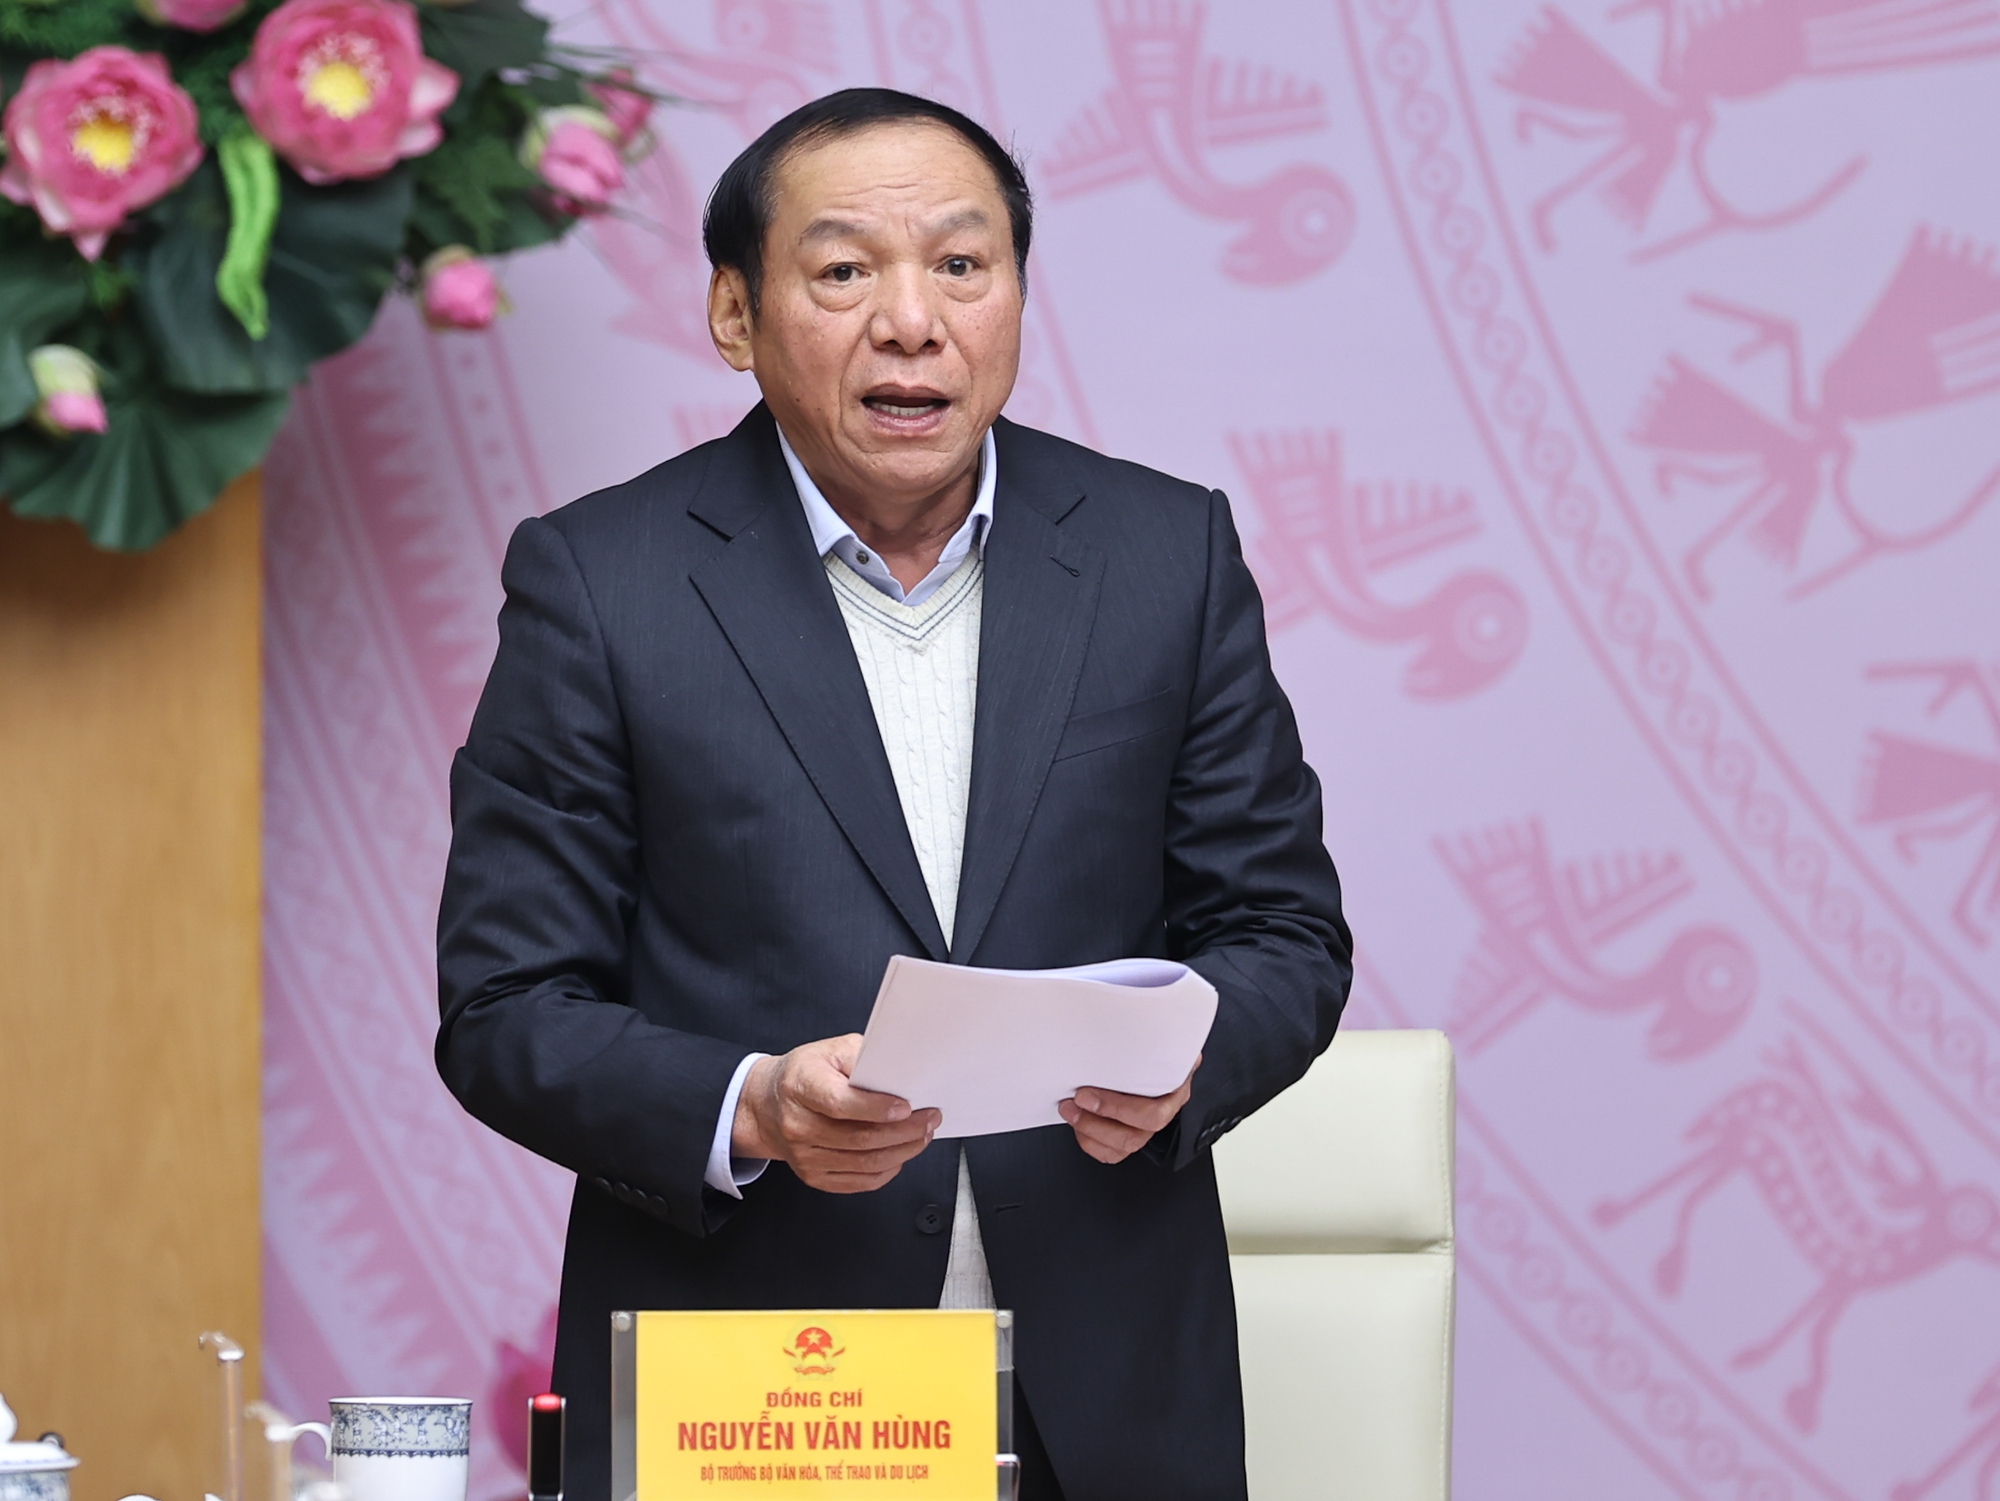 Bộ trưởng Bộ VHTT&DL Nguyễn Văn Hùng báo cáo tại Hội nghị - Ảnh: VGP/Nhật Bắc